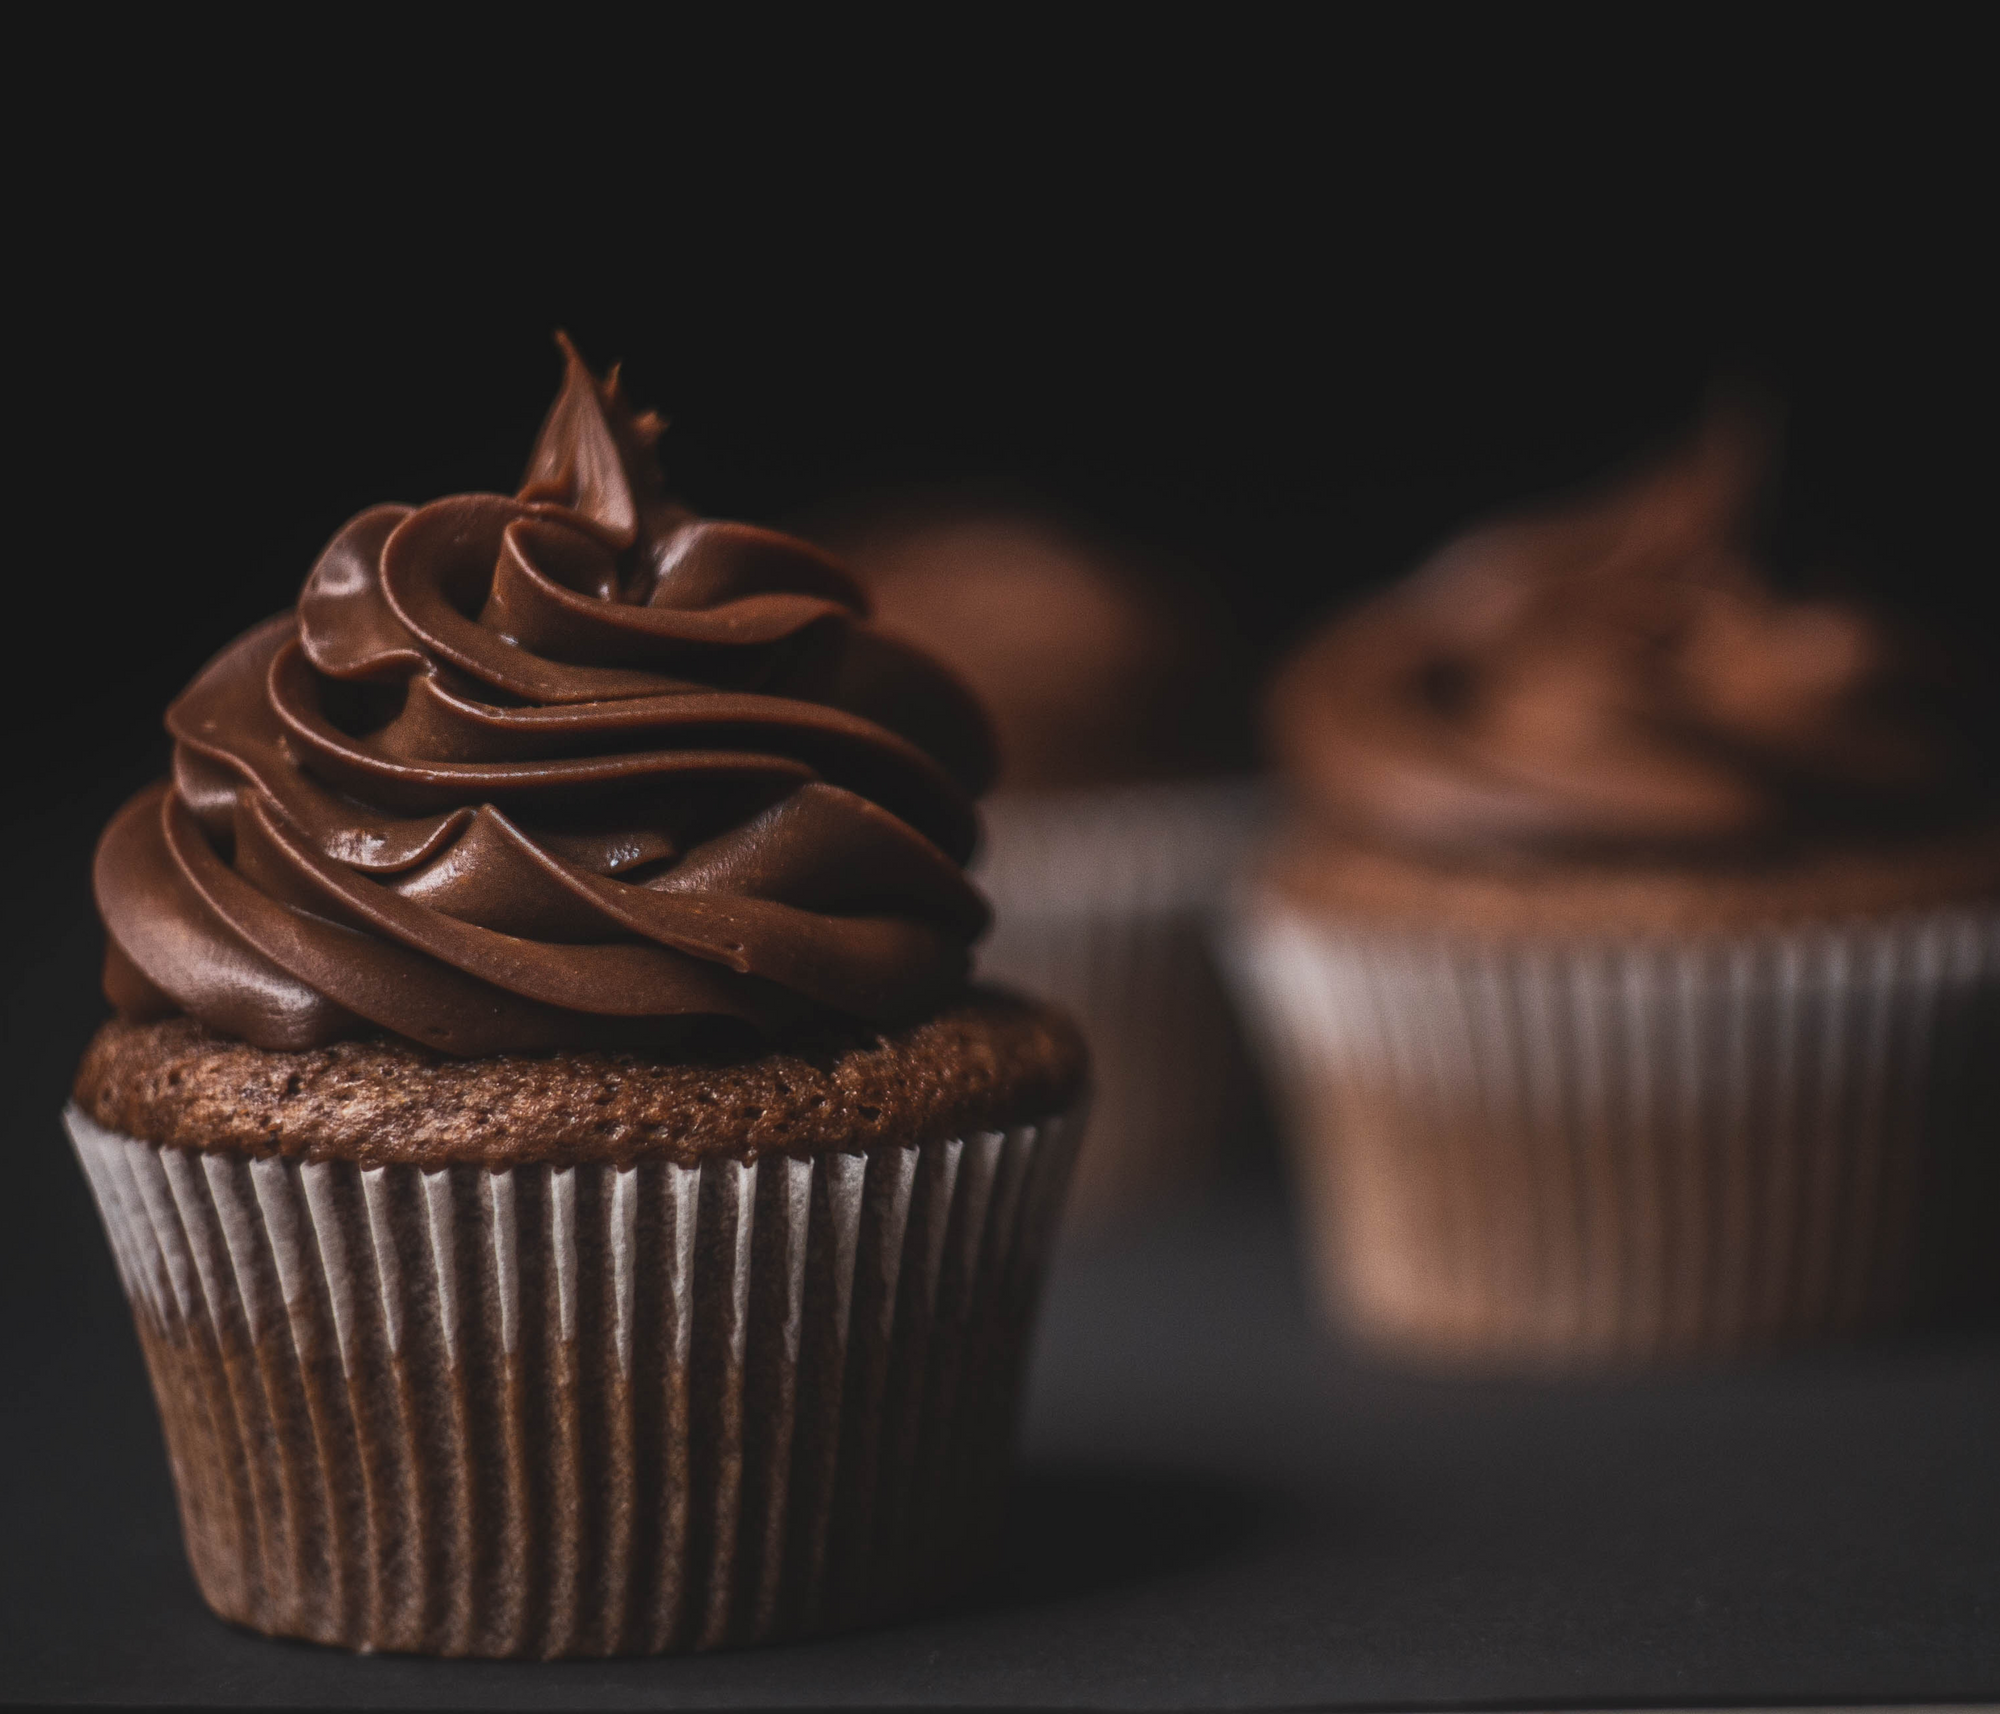 Chocolate cupcakes - Diabetes & Cake